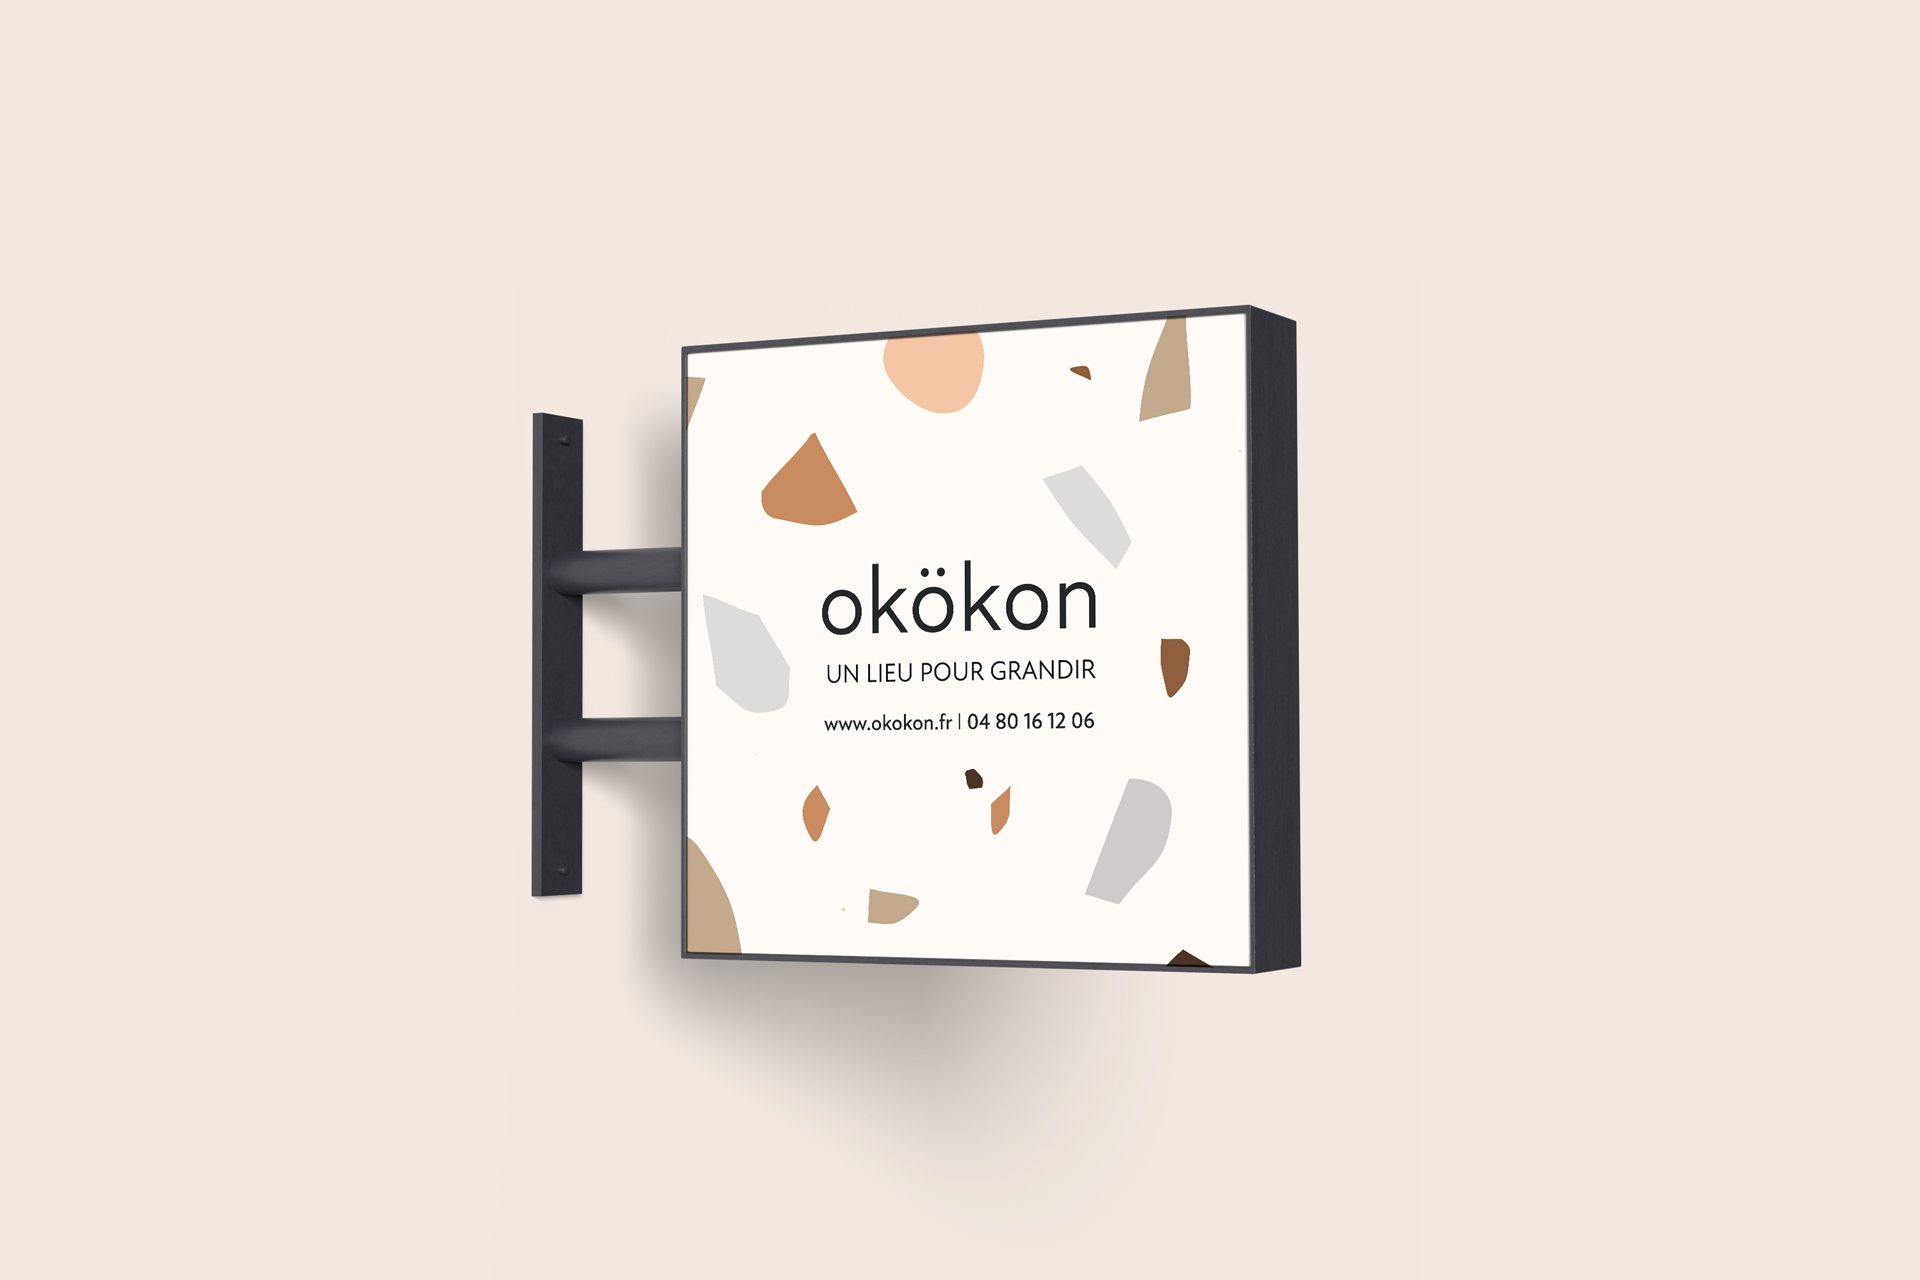 Okokon-imp ression-enseigne